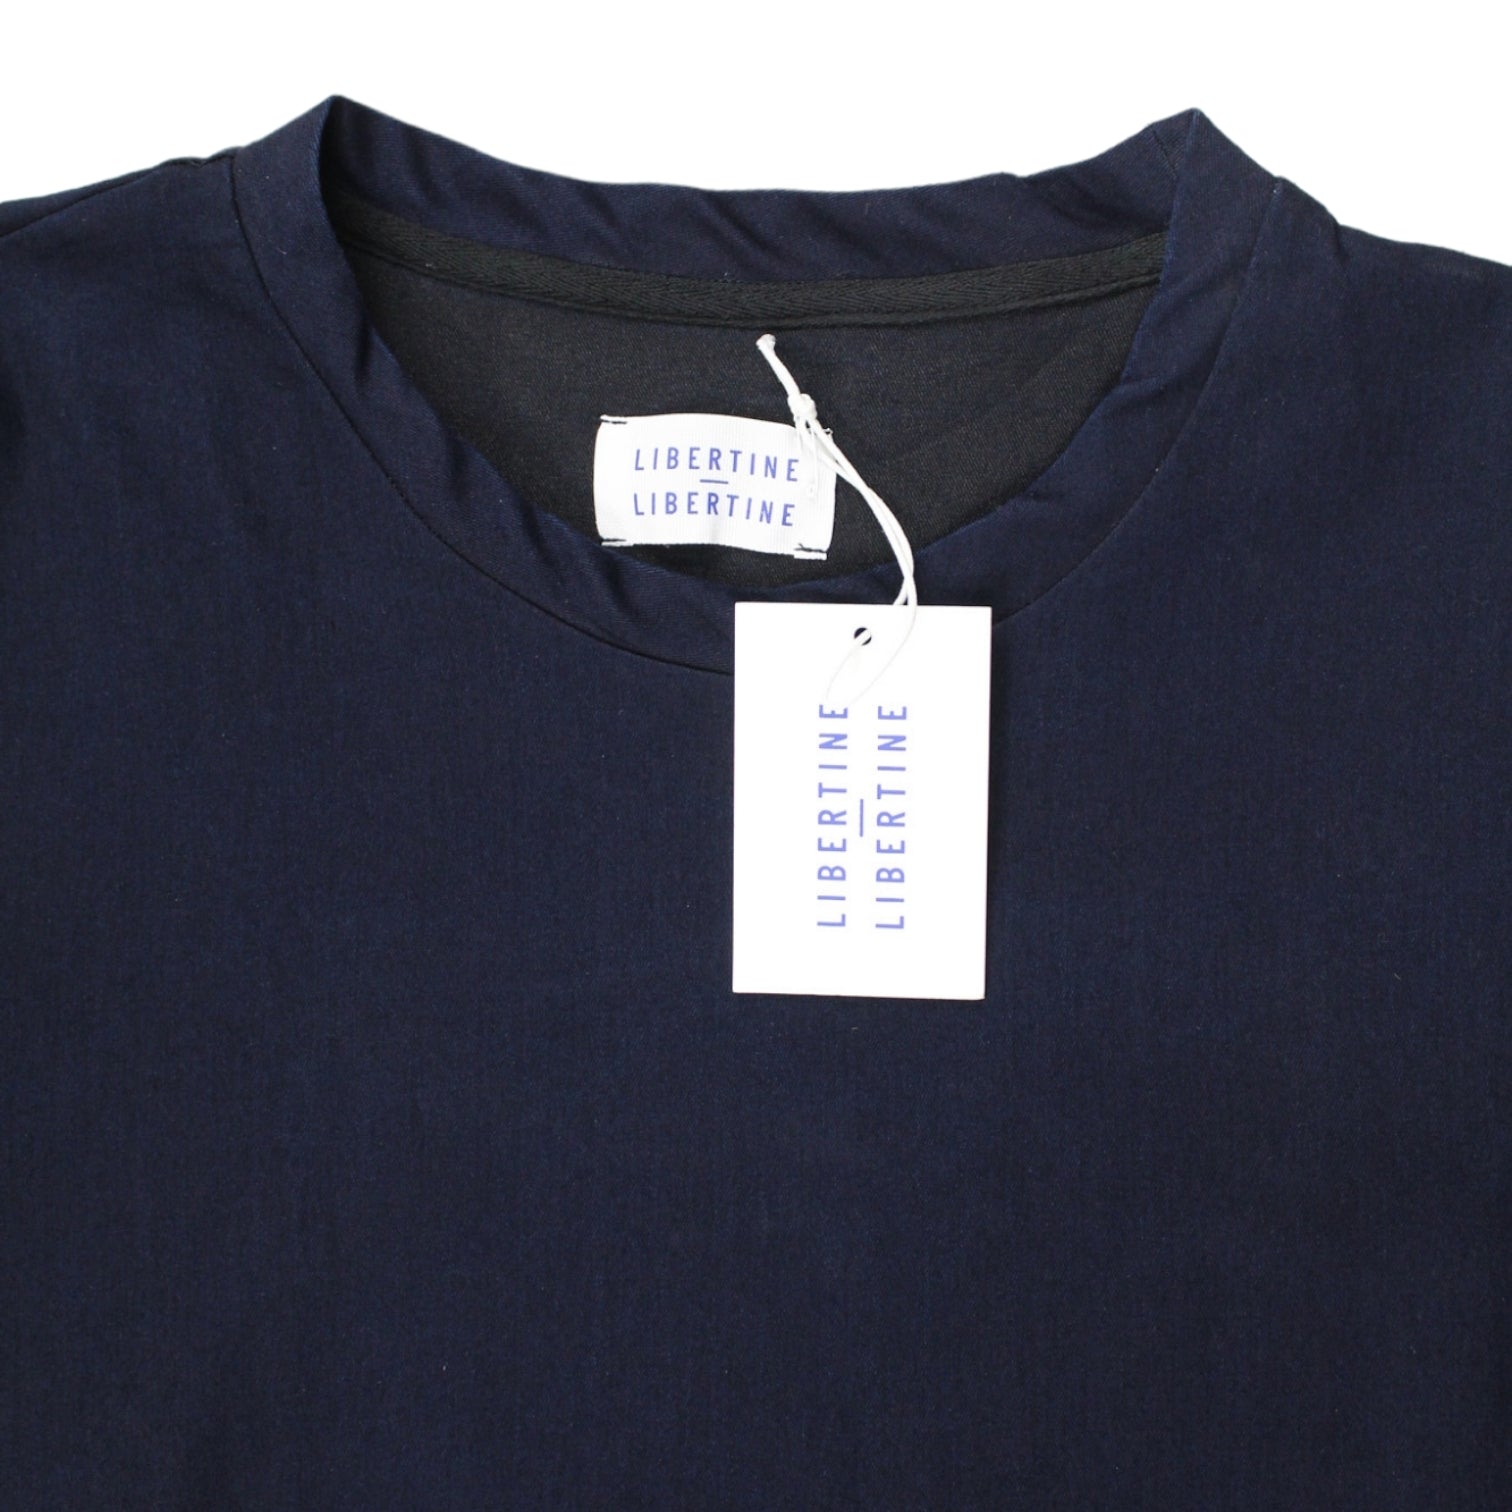 Libertine-Libertine Indigo Sweatshirt Style Top